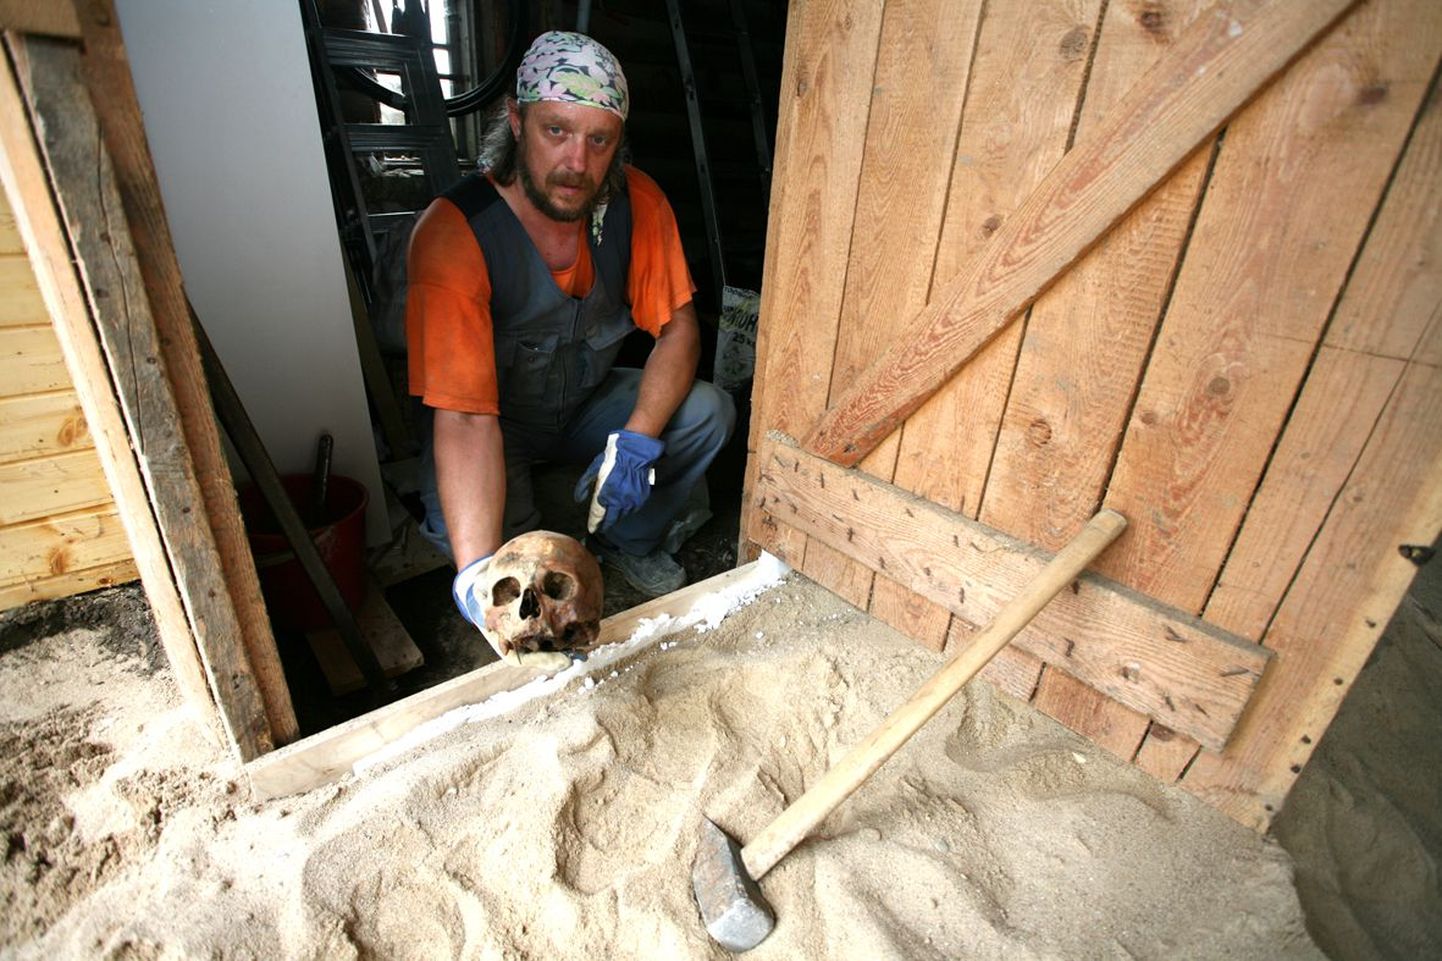 Ehitusmees Kaupo Kirsipuu näitab pealuud, mille ta teisipäeval juhuslikult leidis. Tema all maa sees lebab veel skelett, mille majaomanik lubas üles kaevata.